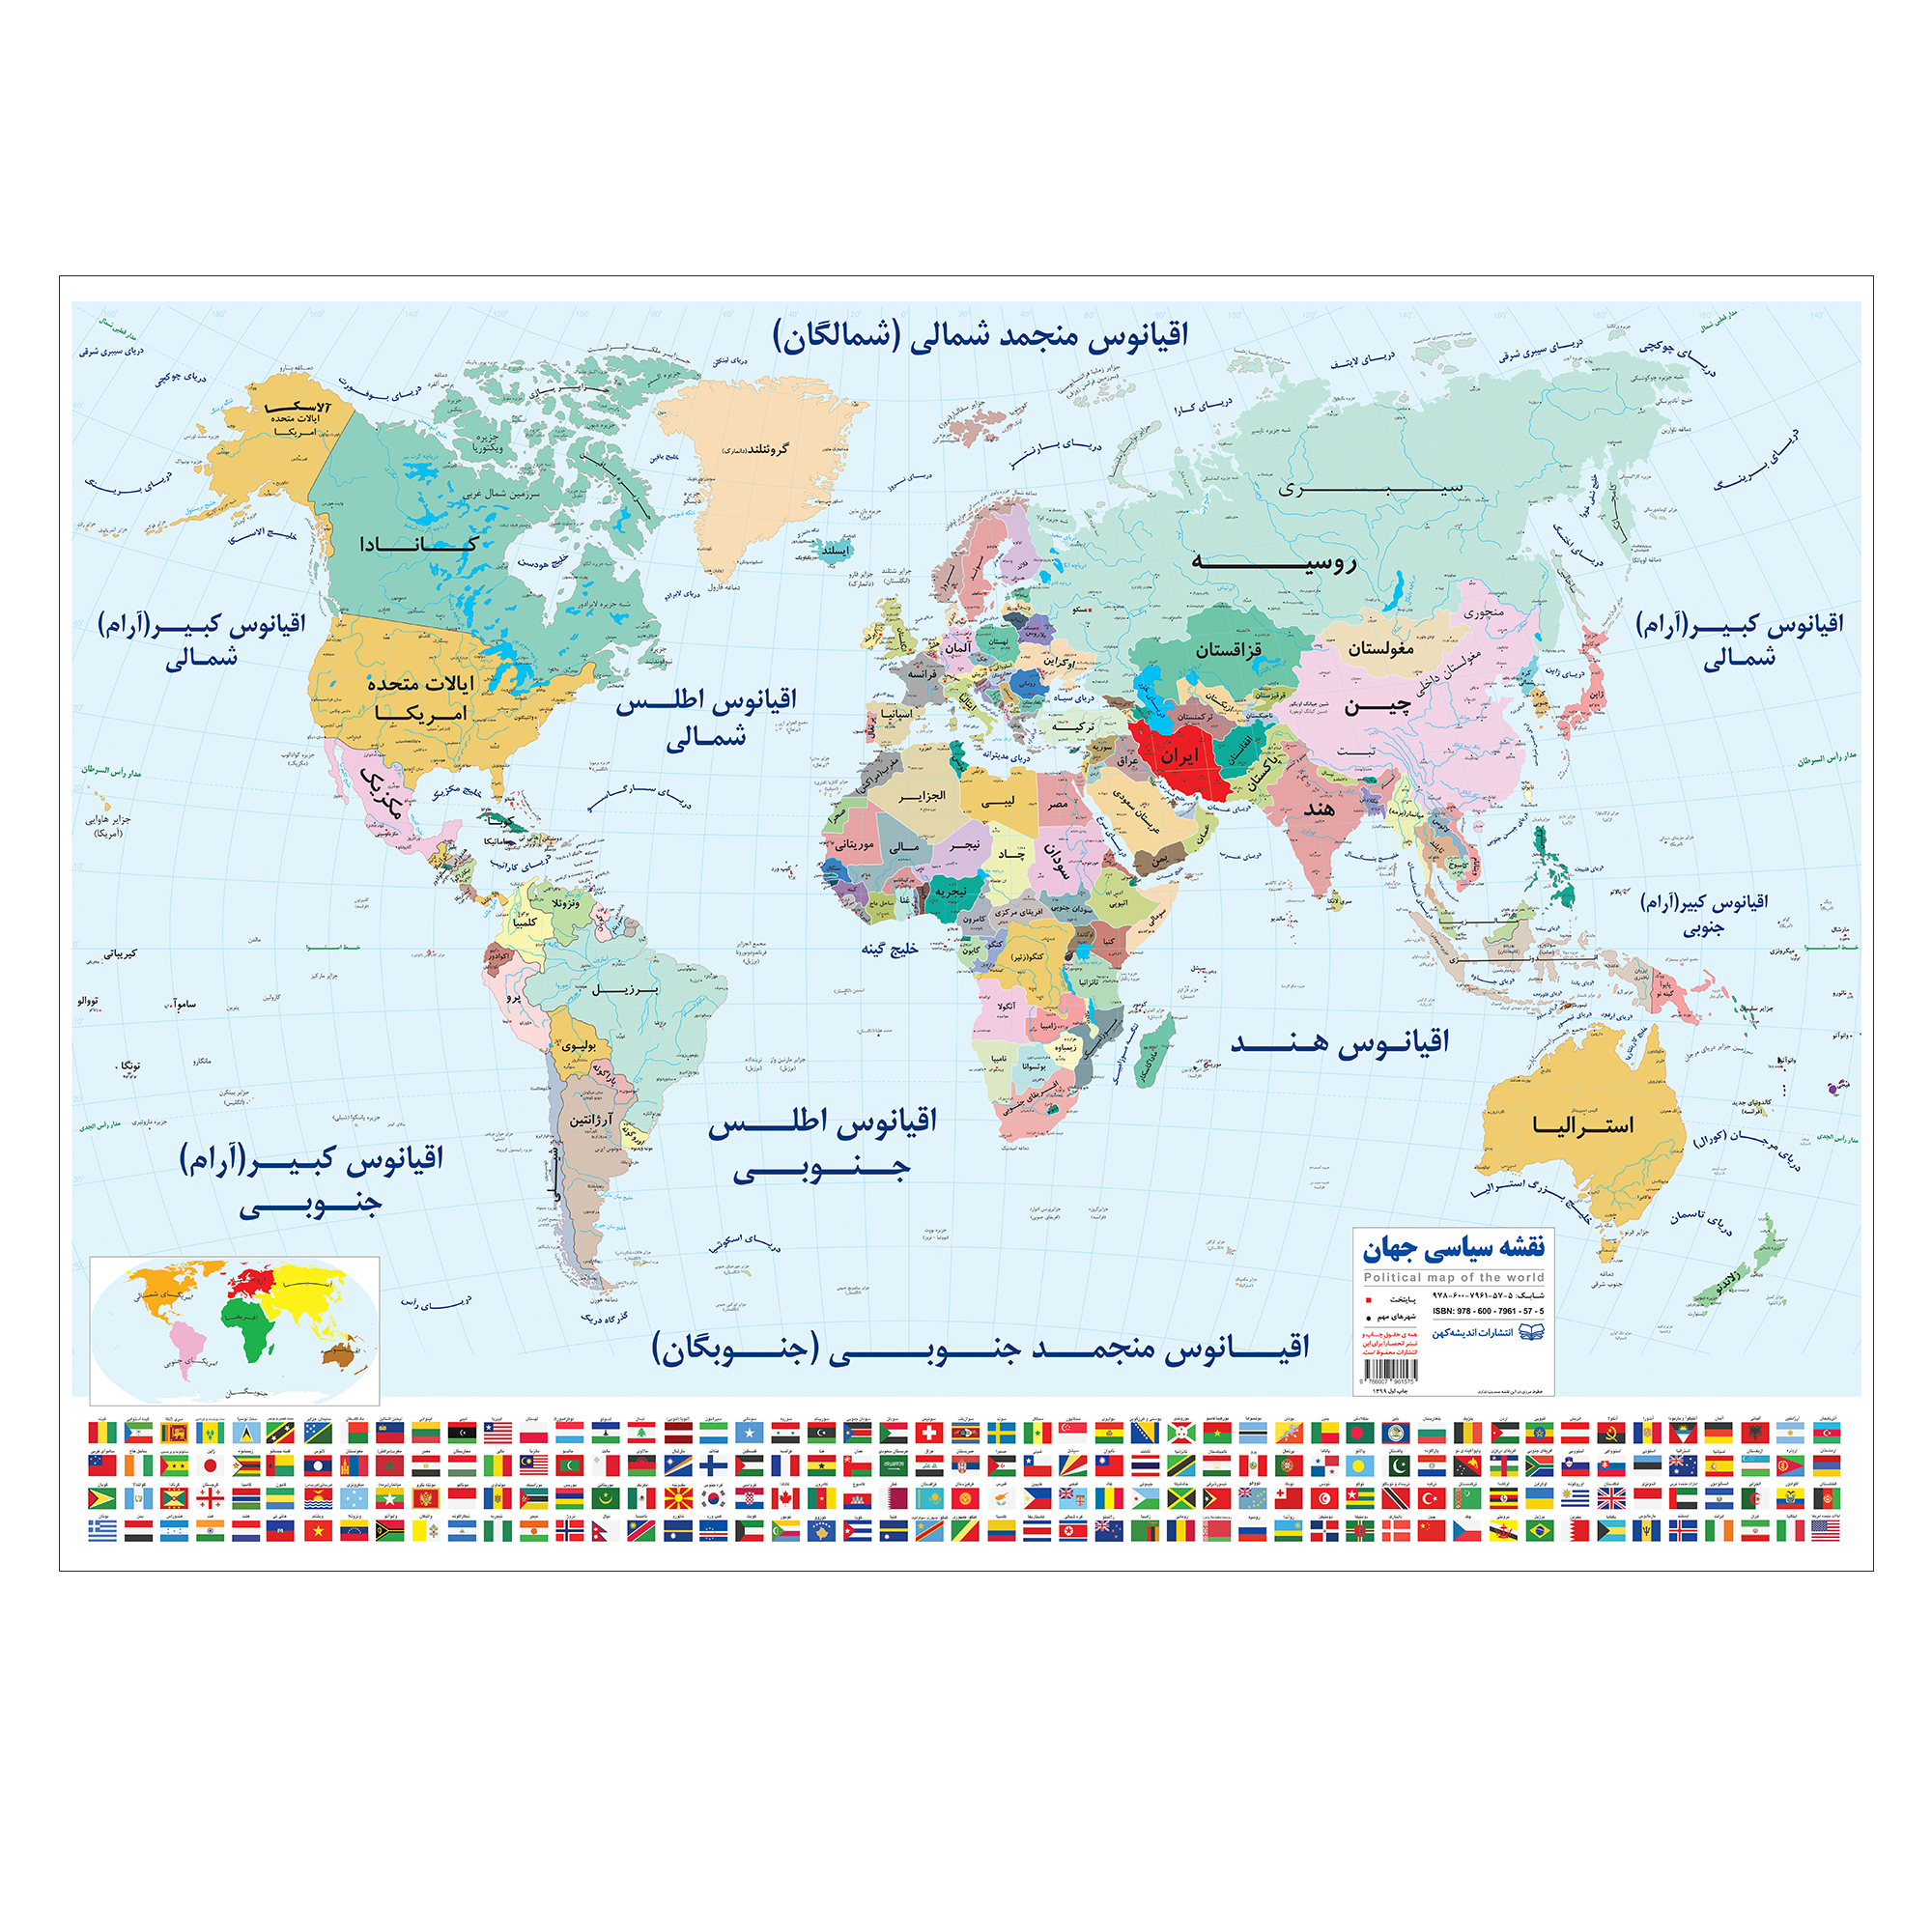 نقشه سیاسی جهان انتشارات اندیشه کهن پرداز کد 201